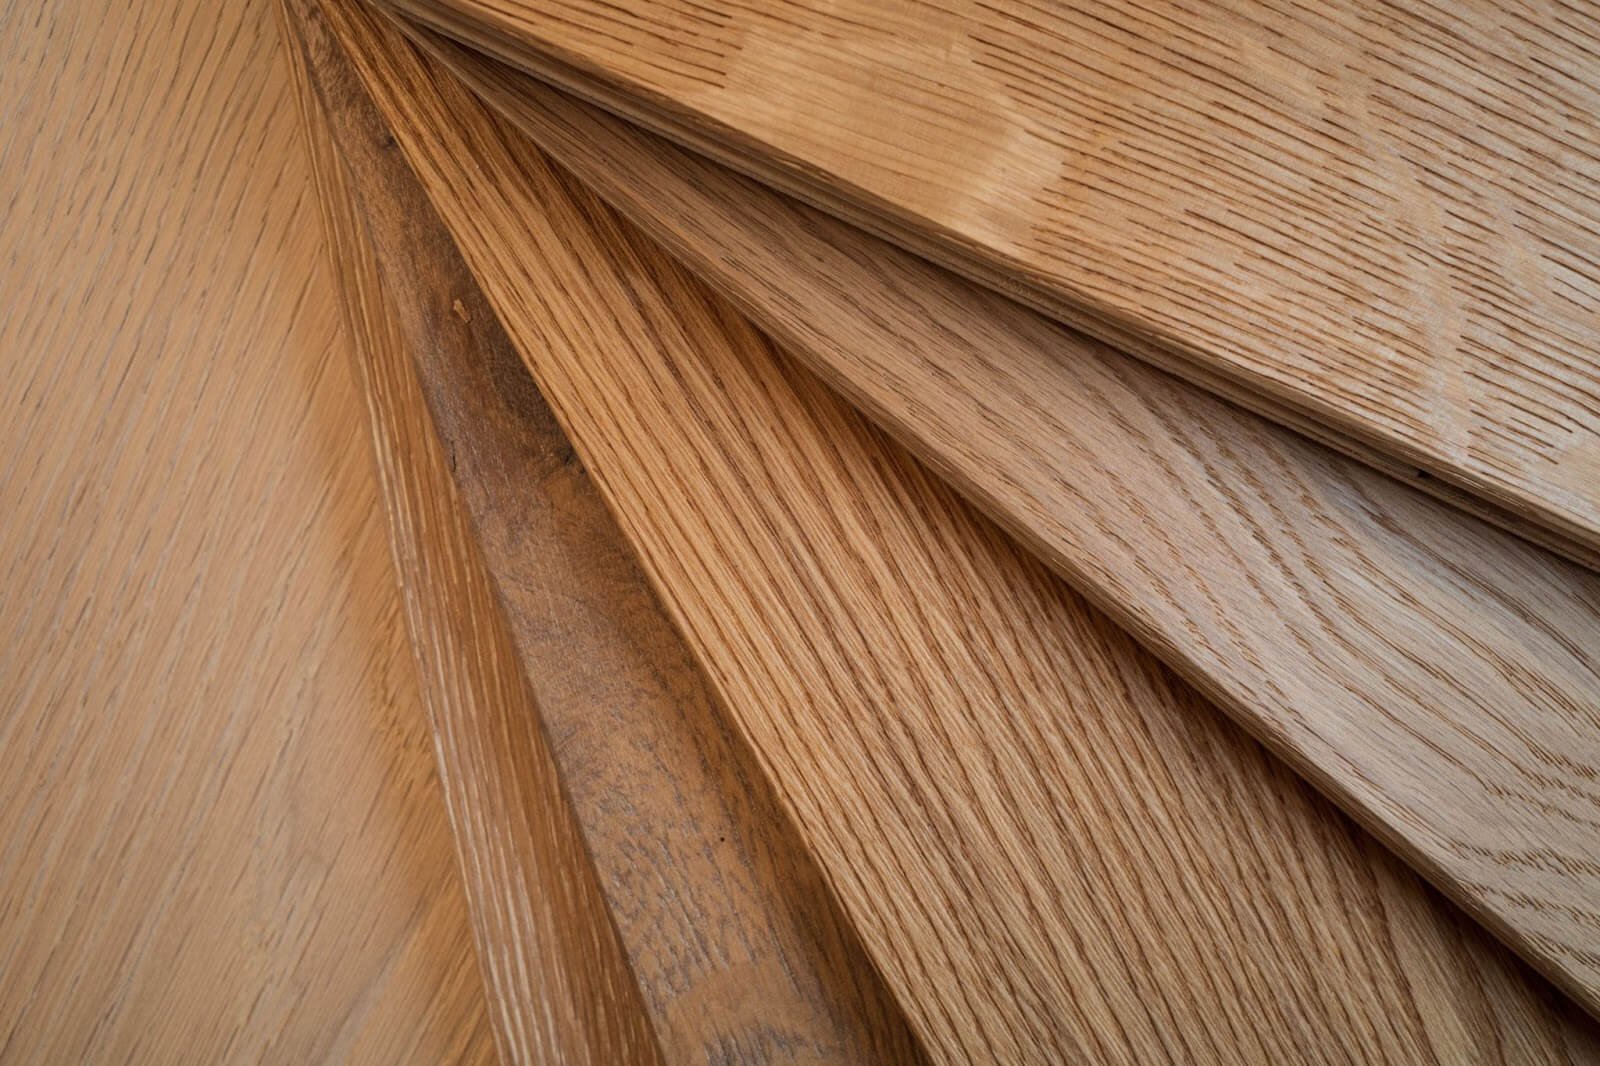 Hardwood floor panels.